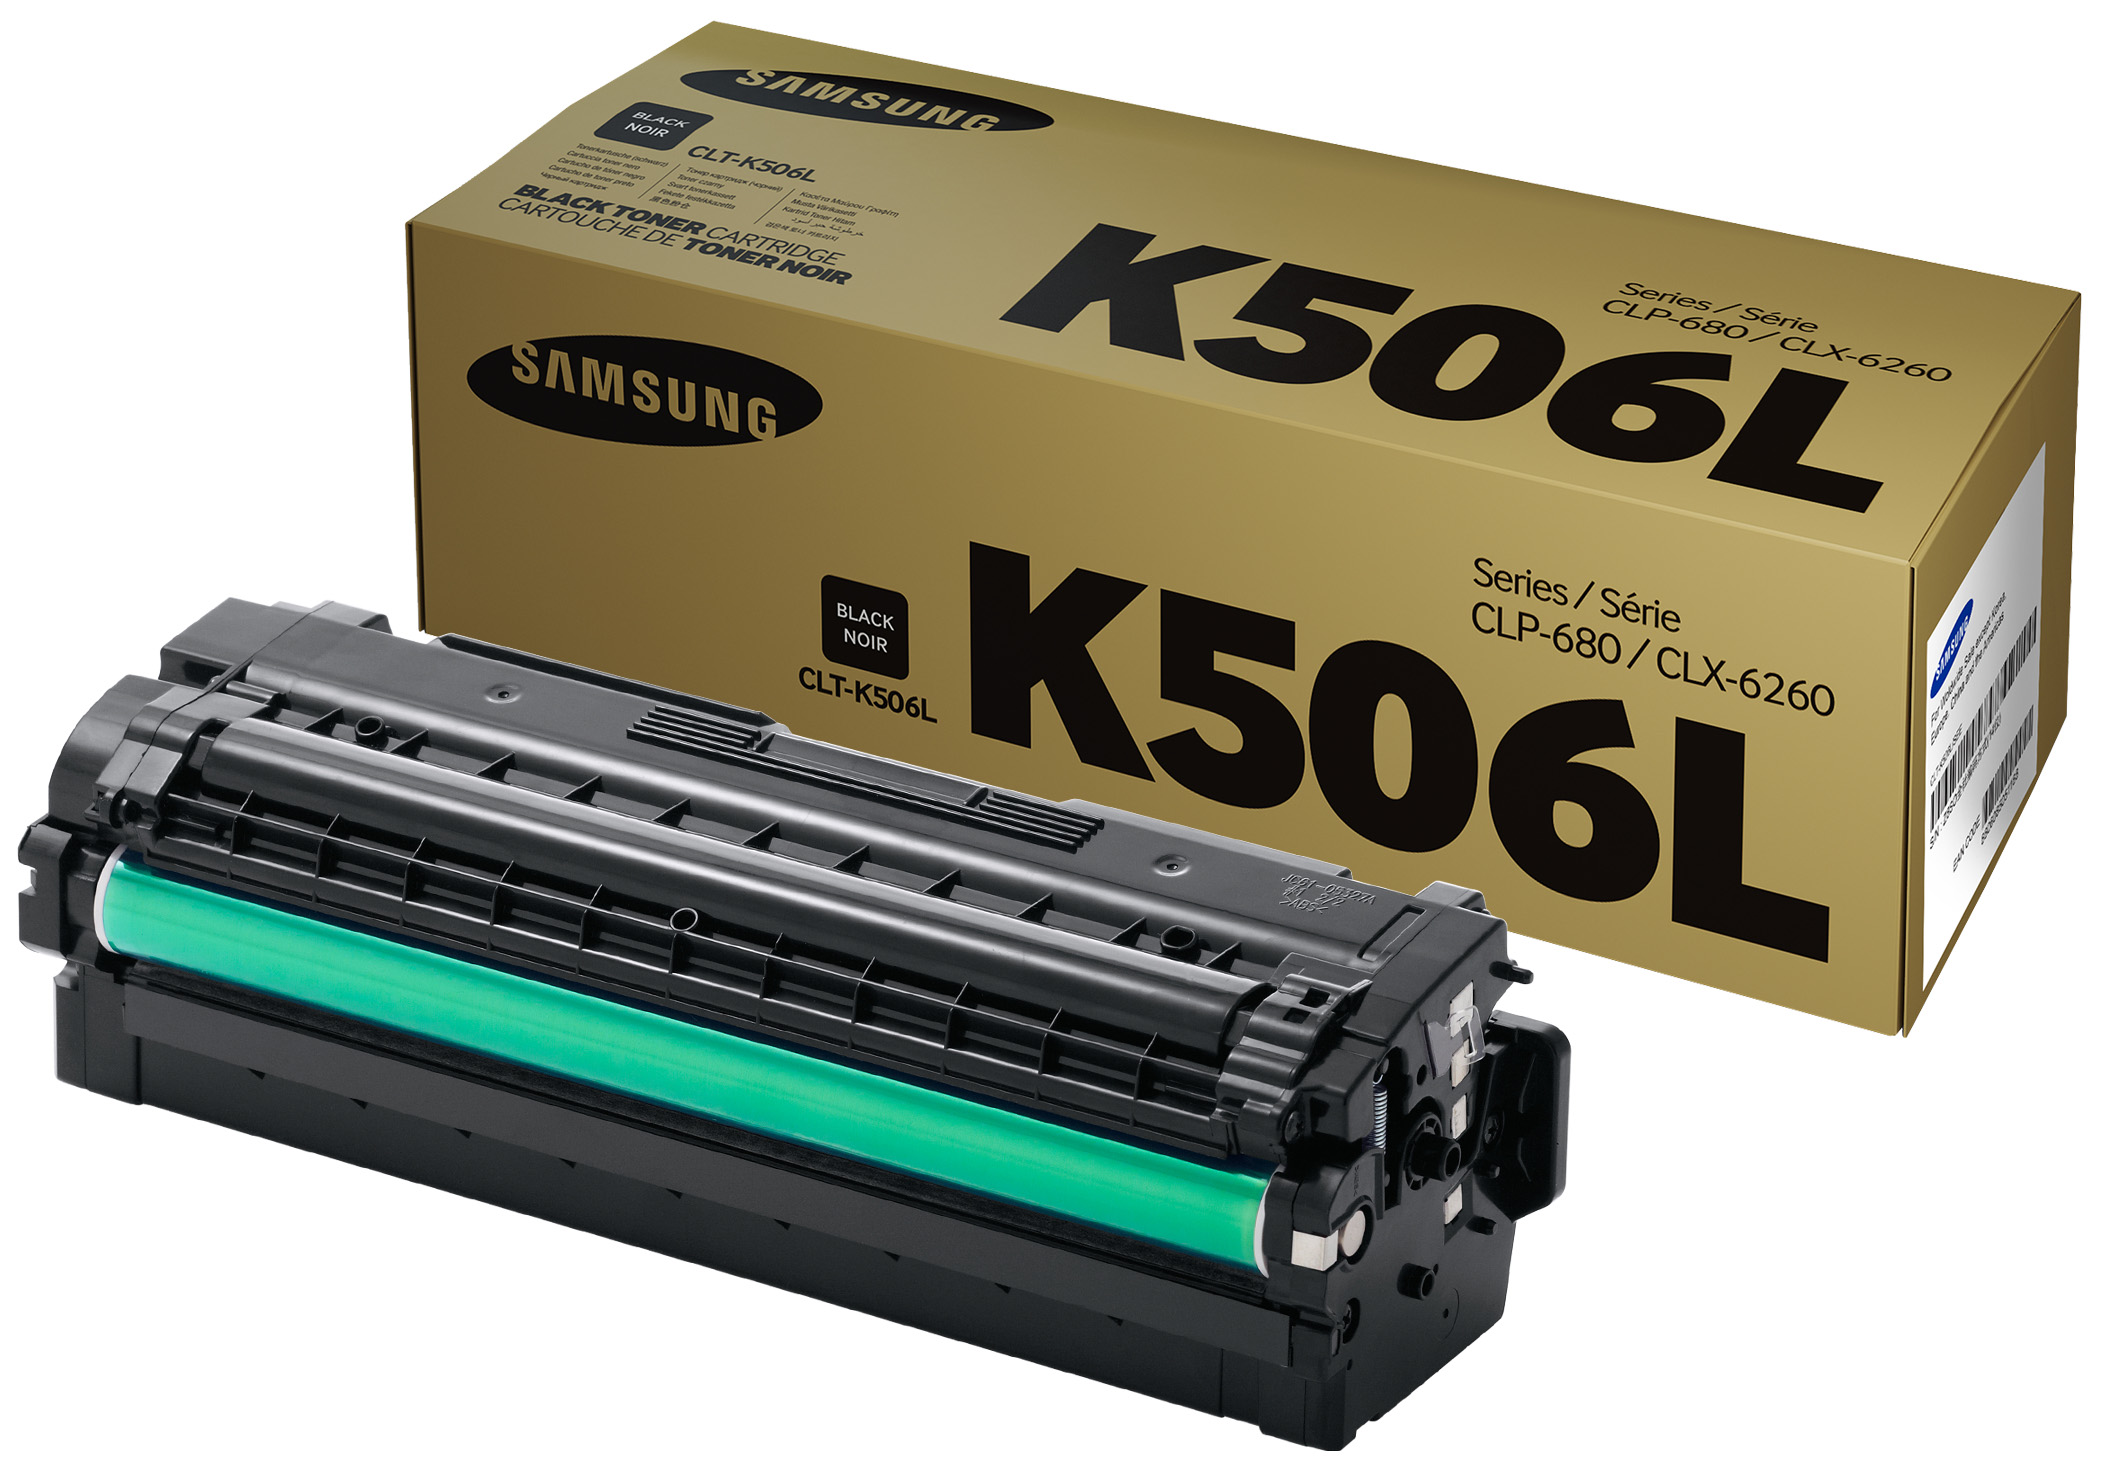 Картридж для лазерного принтера Samsung CLT-K506L, черный, оригинал